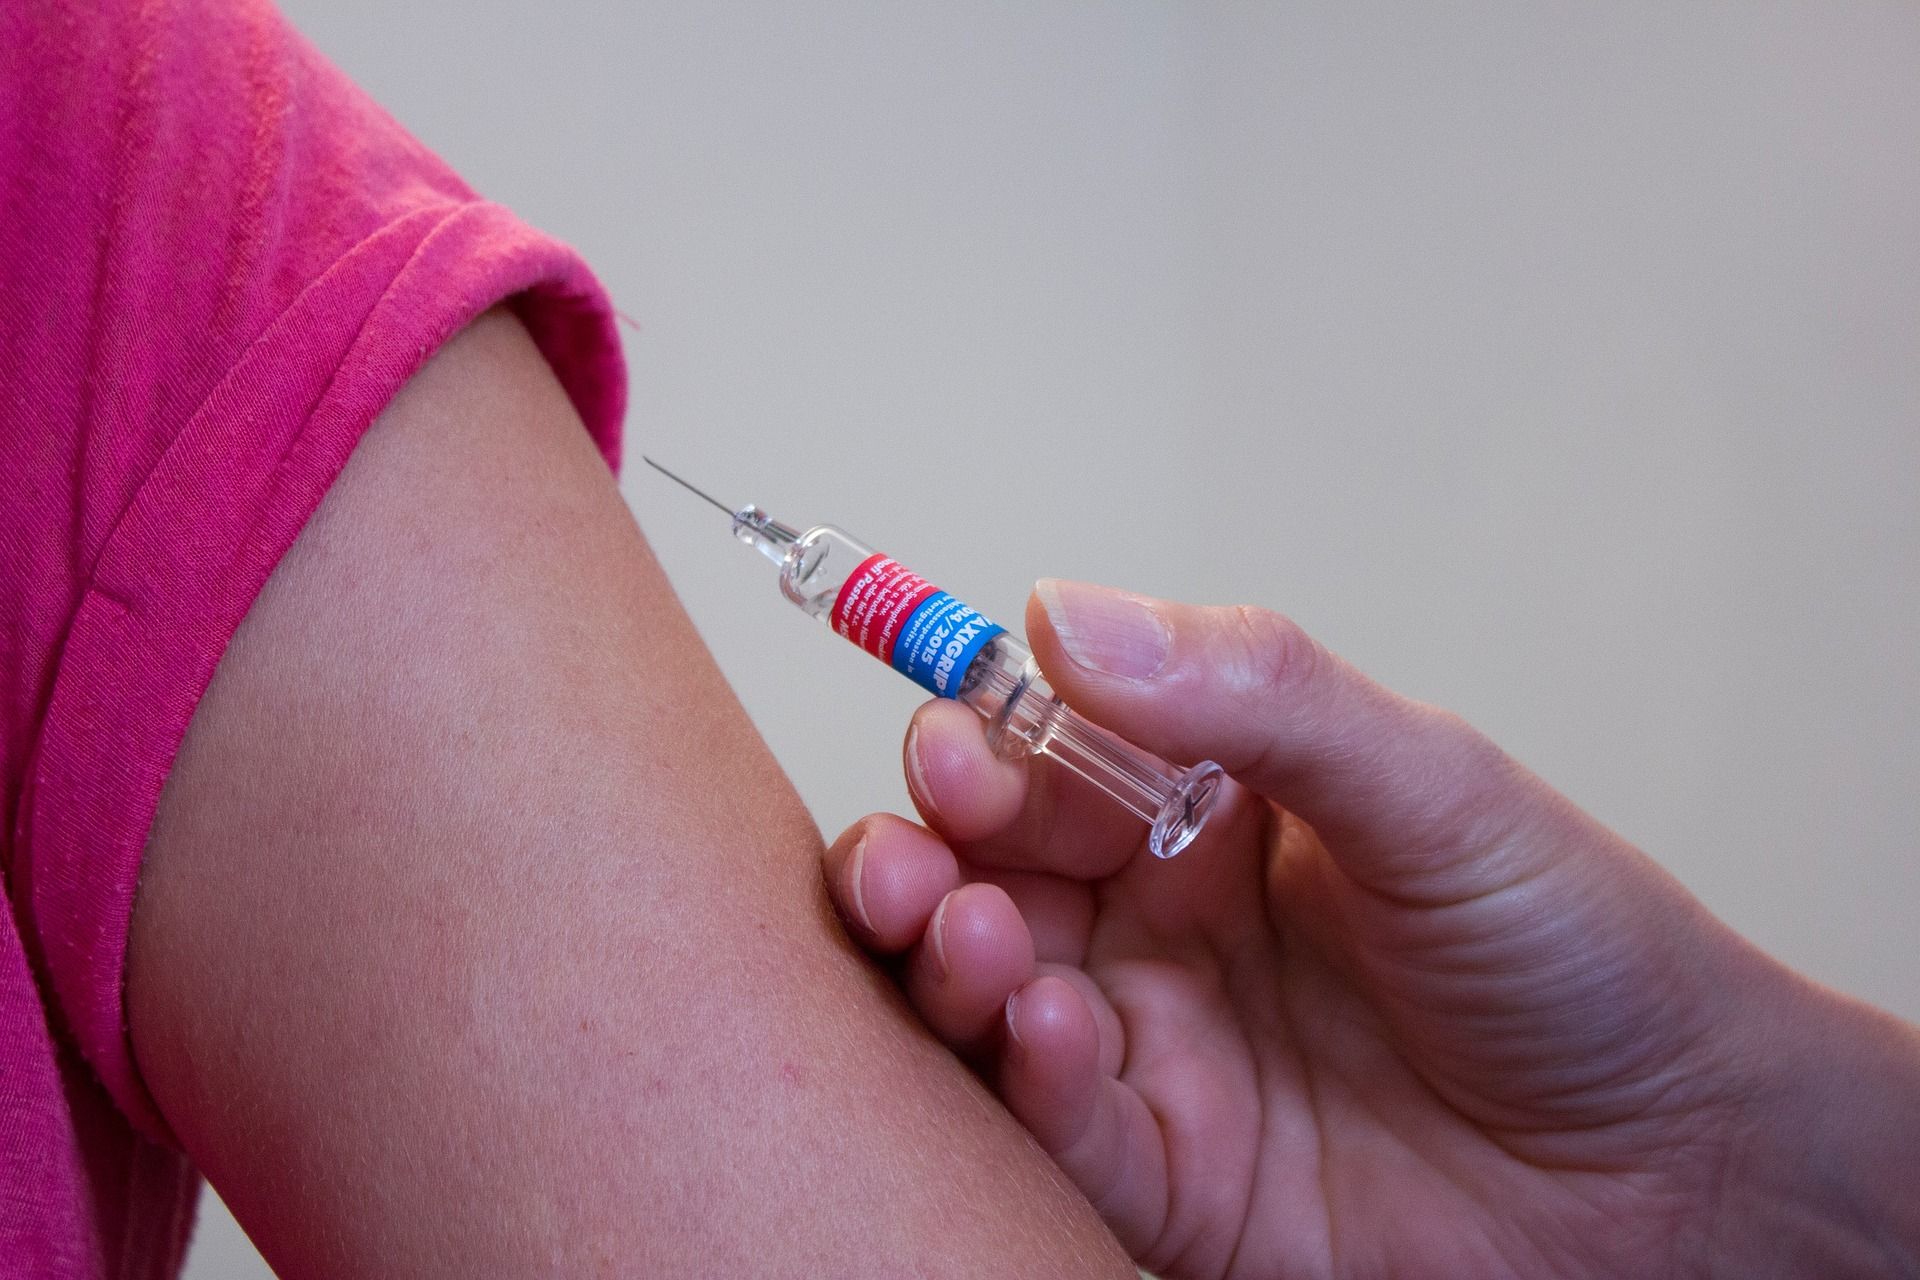 Bezpłatne szczepienia przeciw HPV dla dwóch roczników